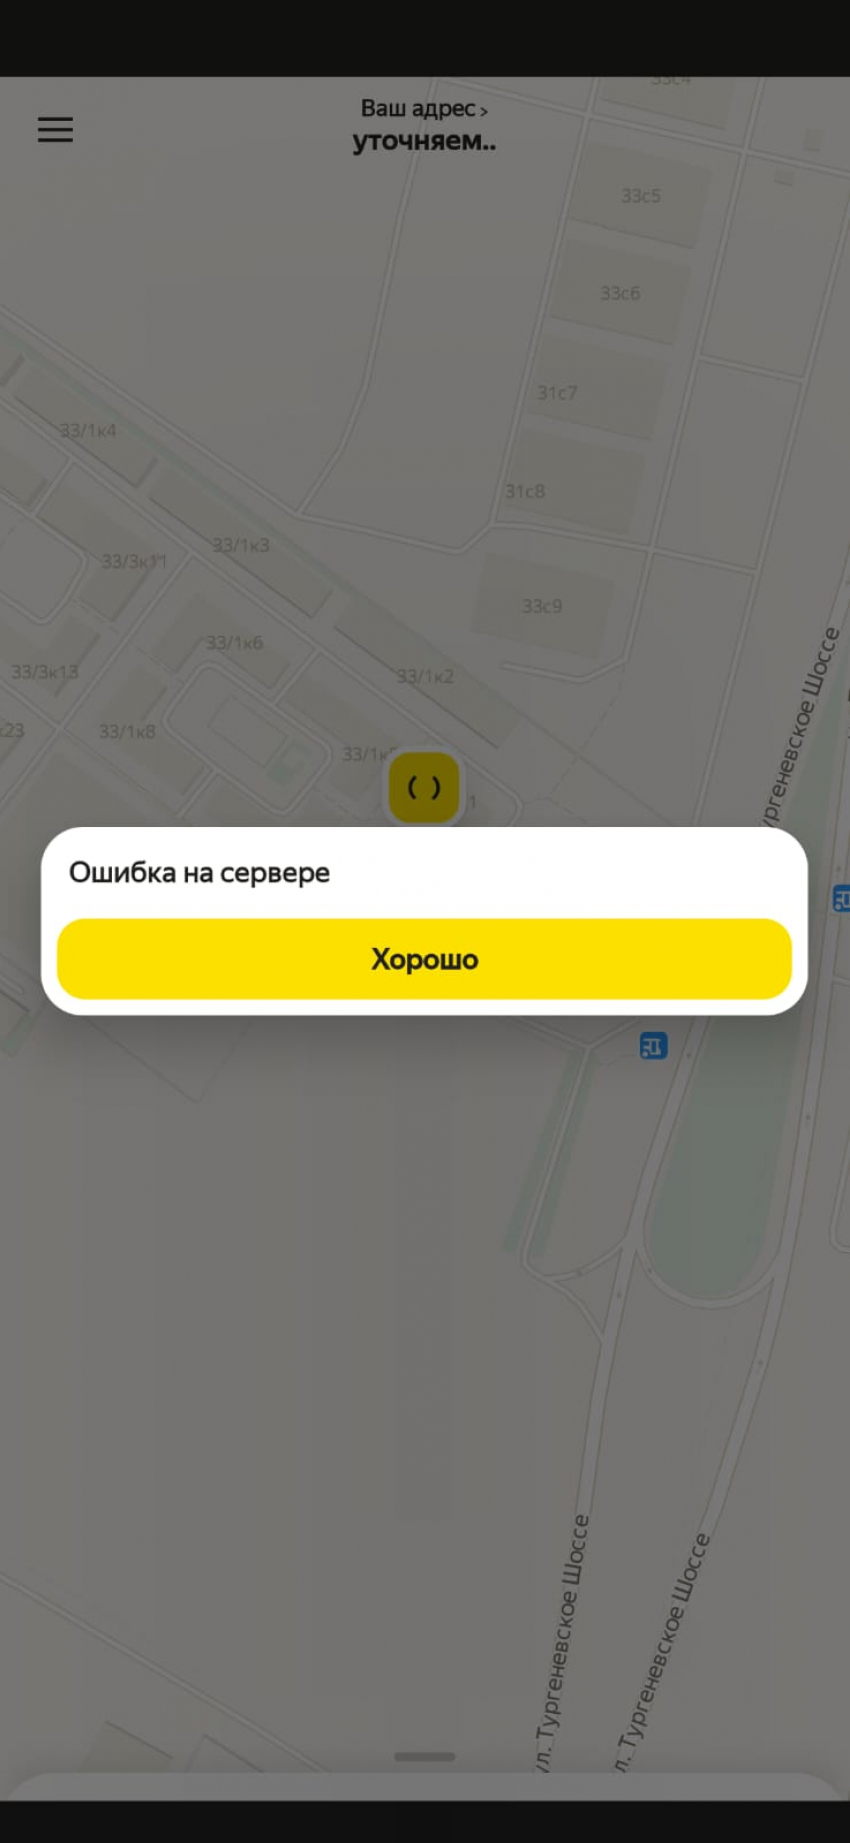 В Краснодаре произошли сбои в работе приложений «Яндекс Такси» и Uber